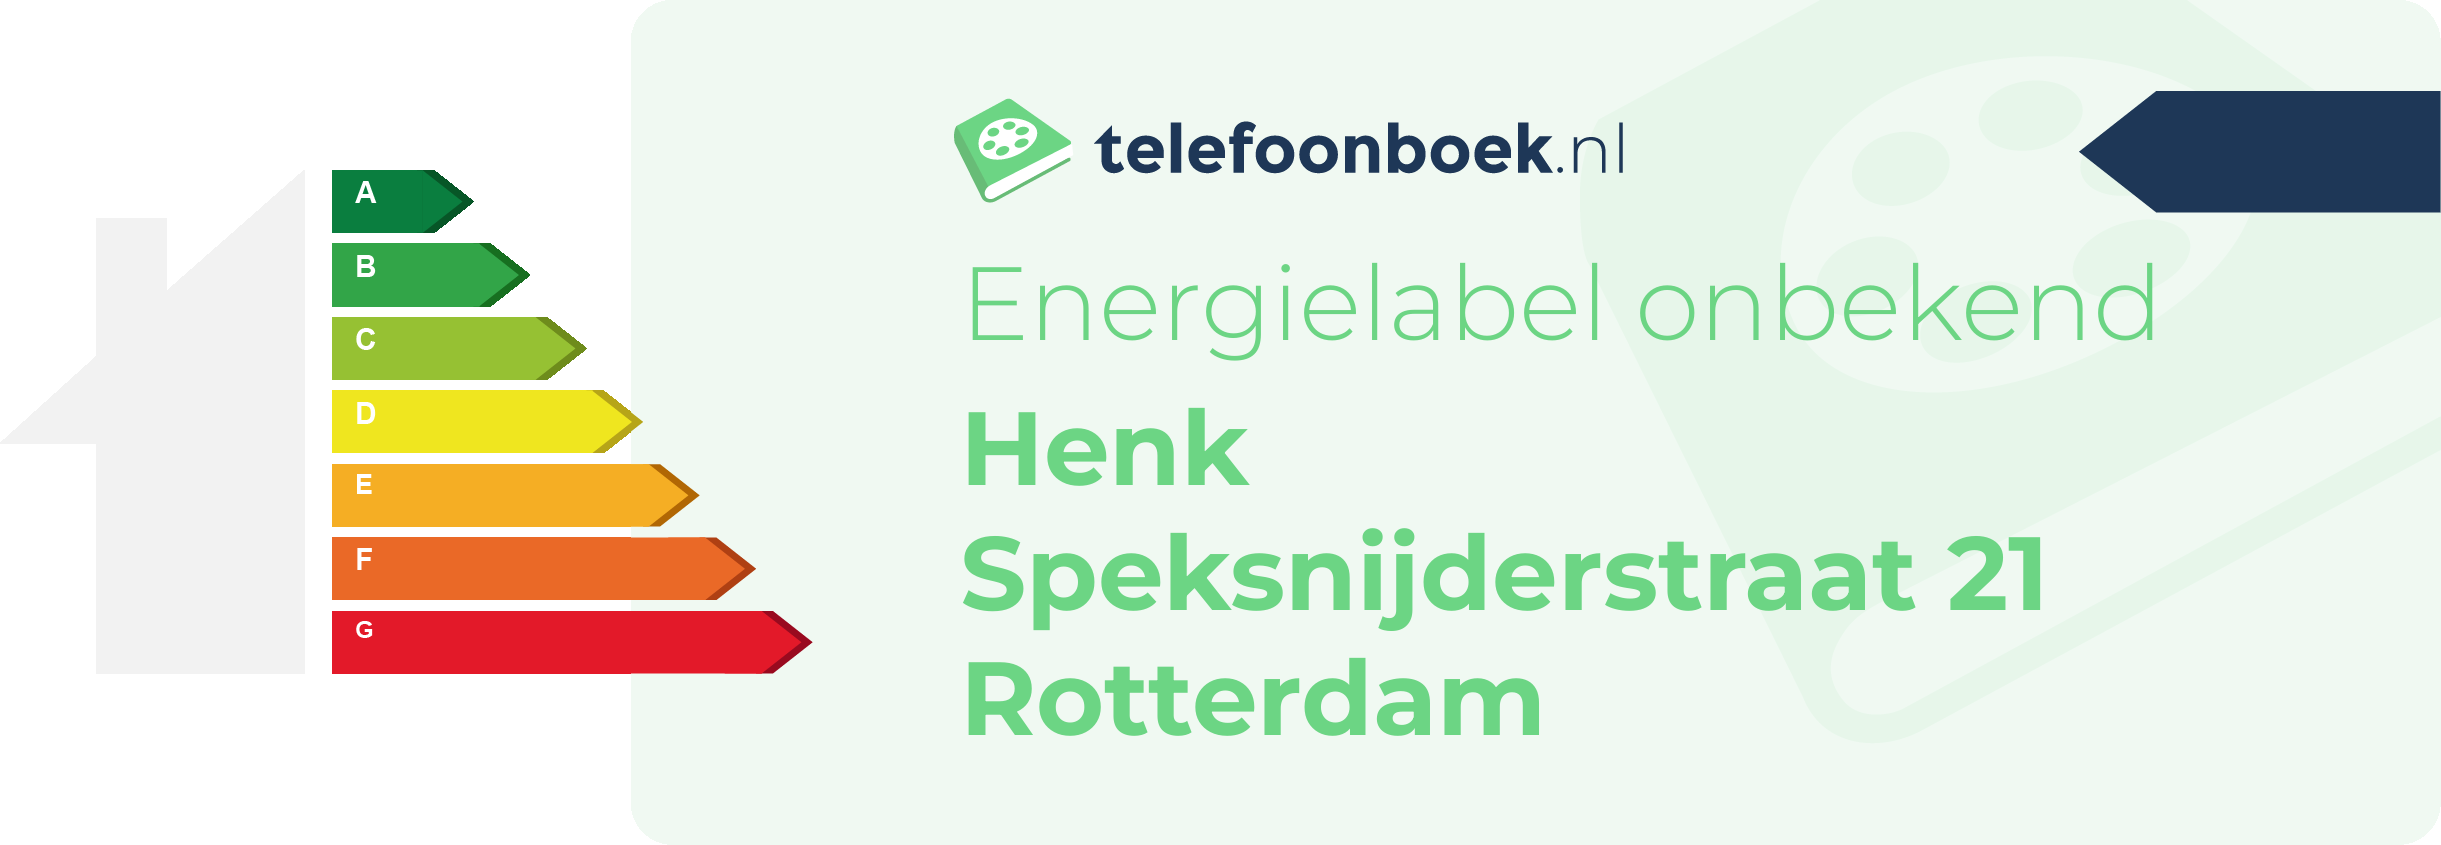 Energielabel Henk Speksnijderstraat 21 Rotterdam